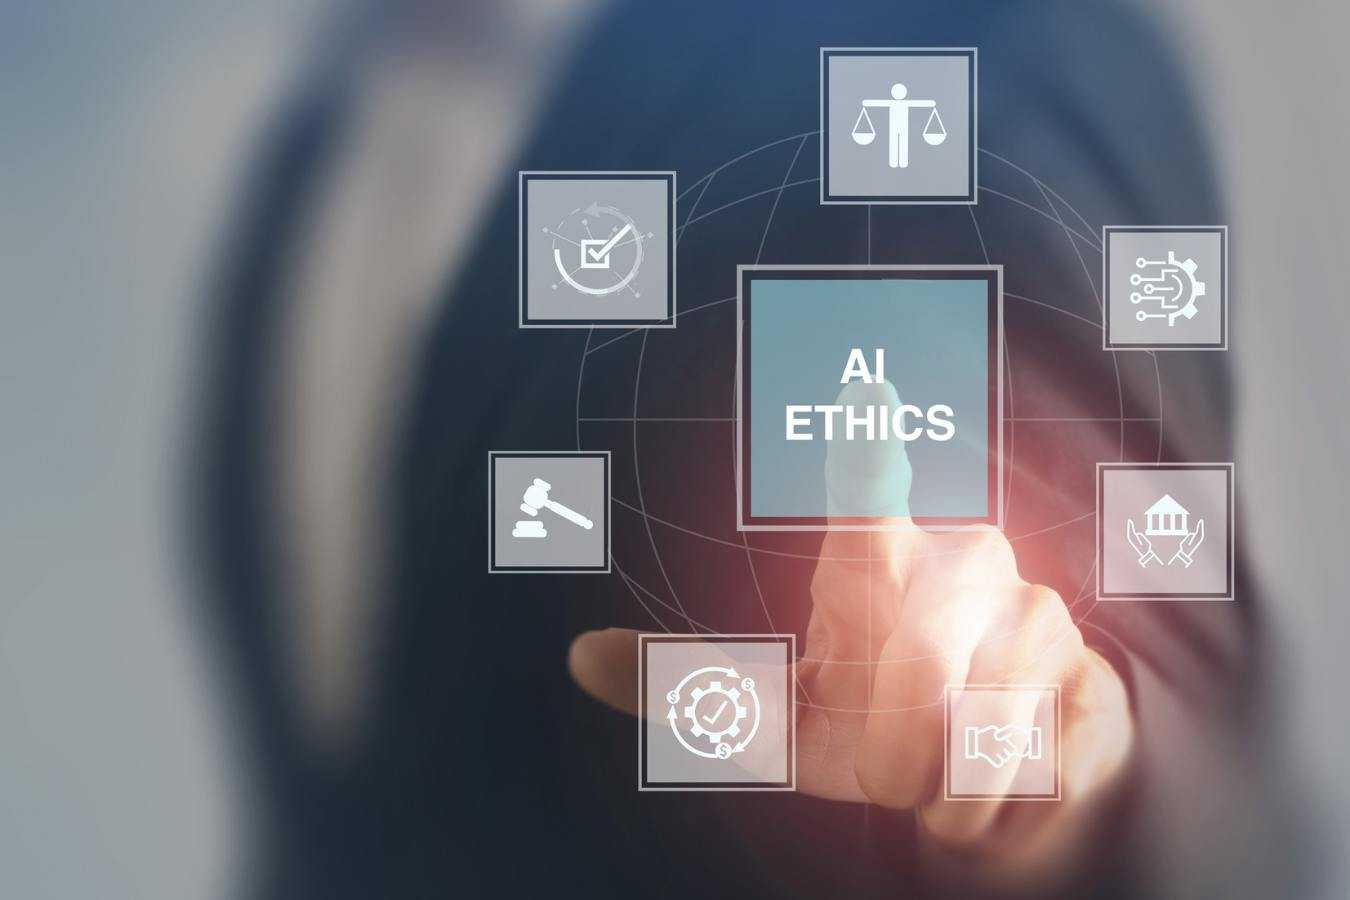 AI ethics